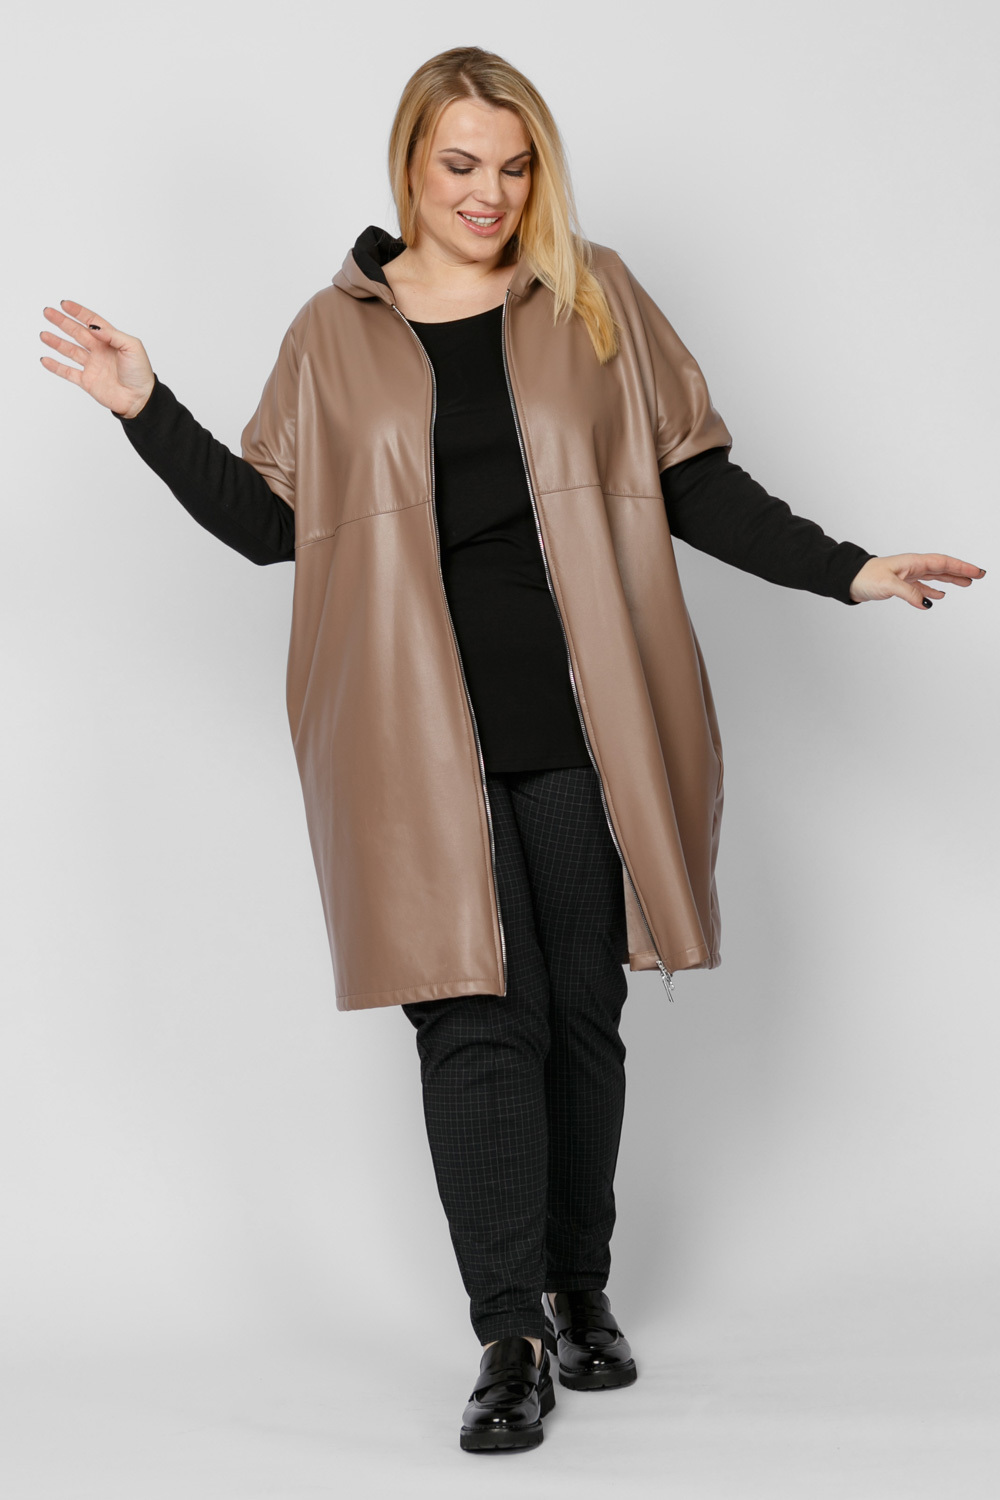 Пальто женское ARTESSA PL10209BRW19 коричневое 68-70 RU